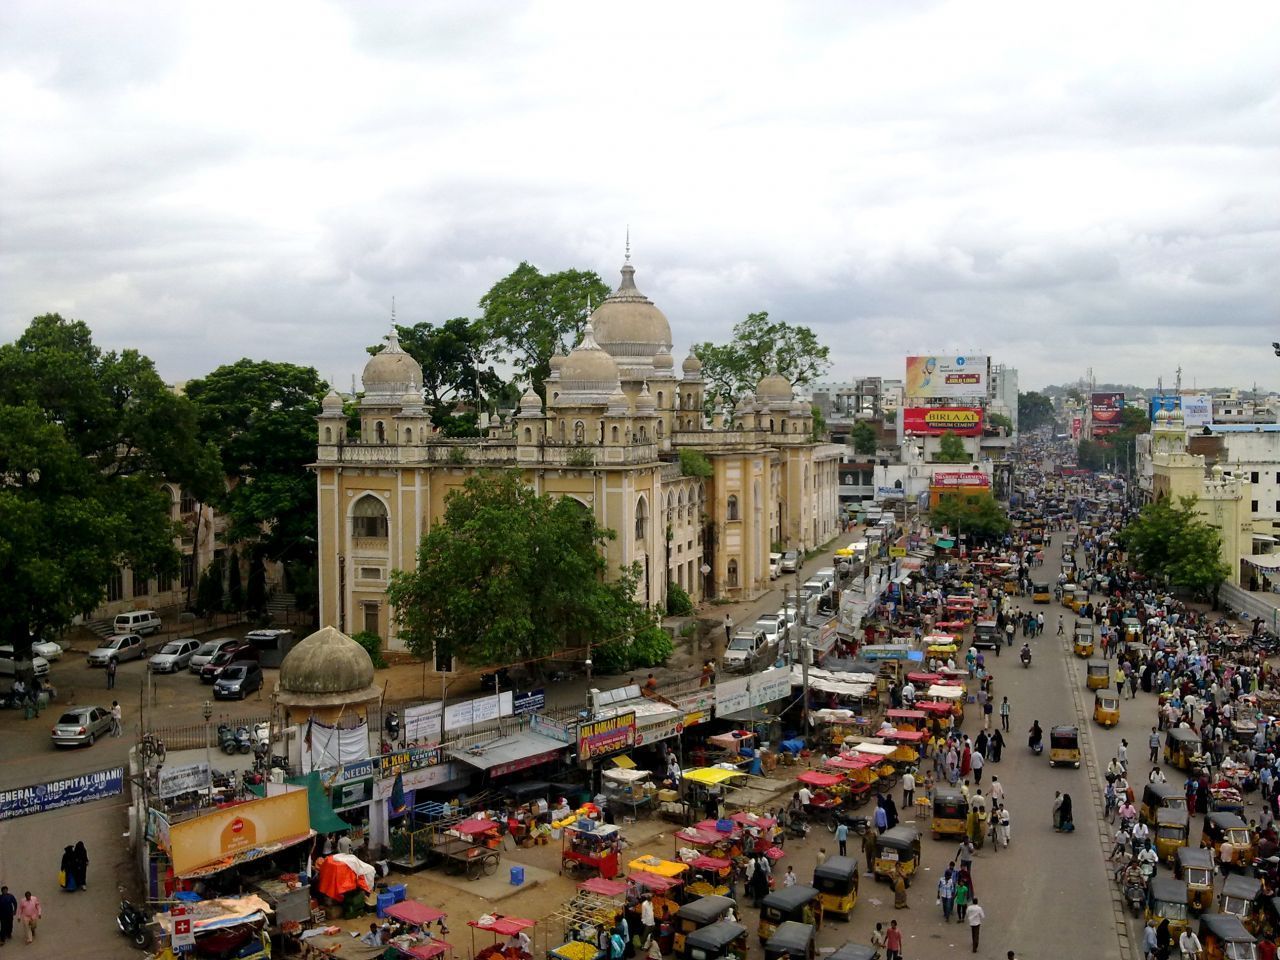 Hyderabad: Die viertgrößte Stadt Indiens ist das Zentrum für Biotechnologie und der Pharmaindustrie. Die Einwohnerzahl der Metropolregion im südlicheren Teil des Riesen-Landes liegt bei 8 Millionen - noch!